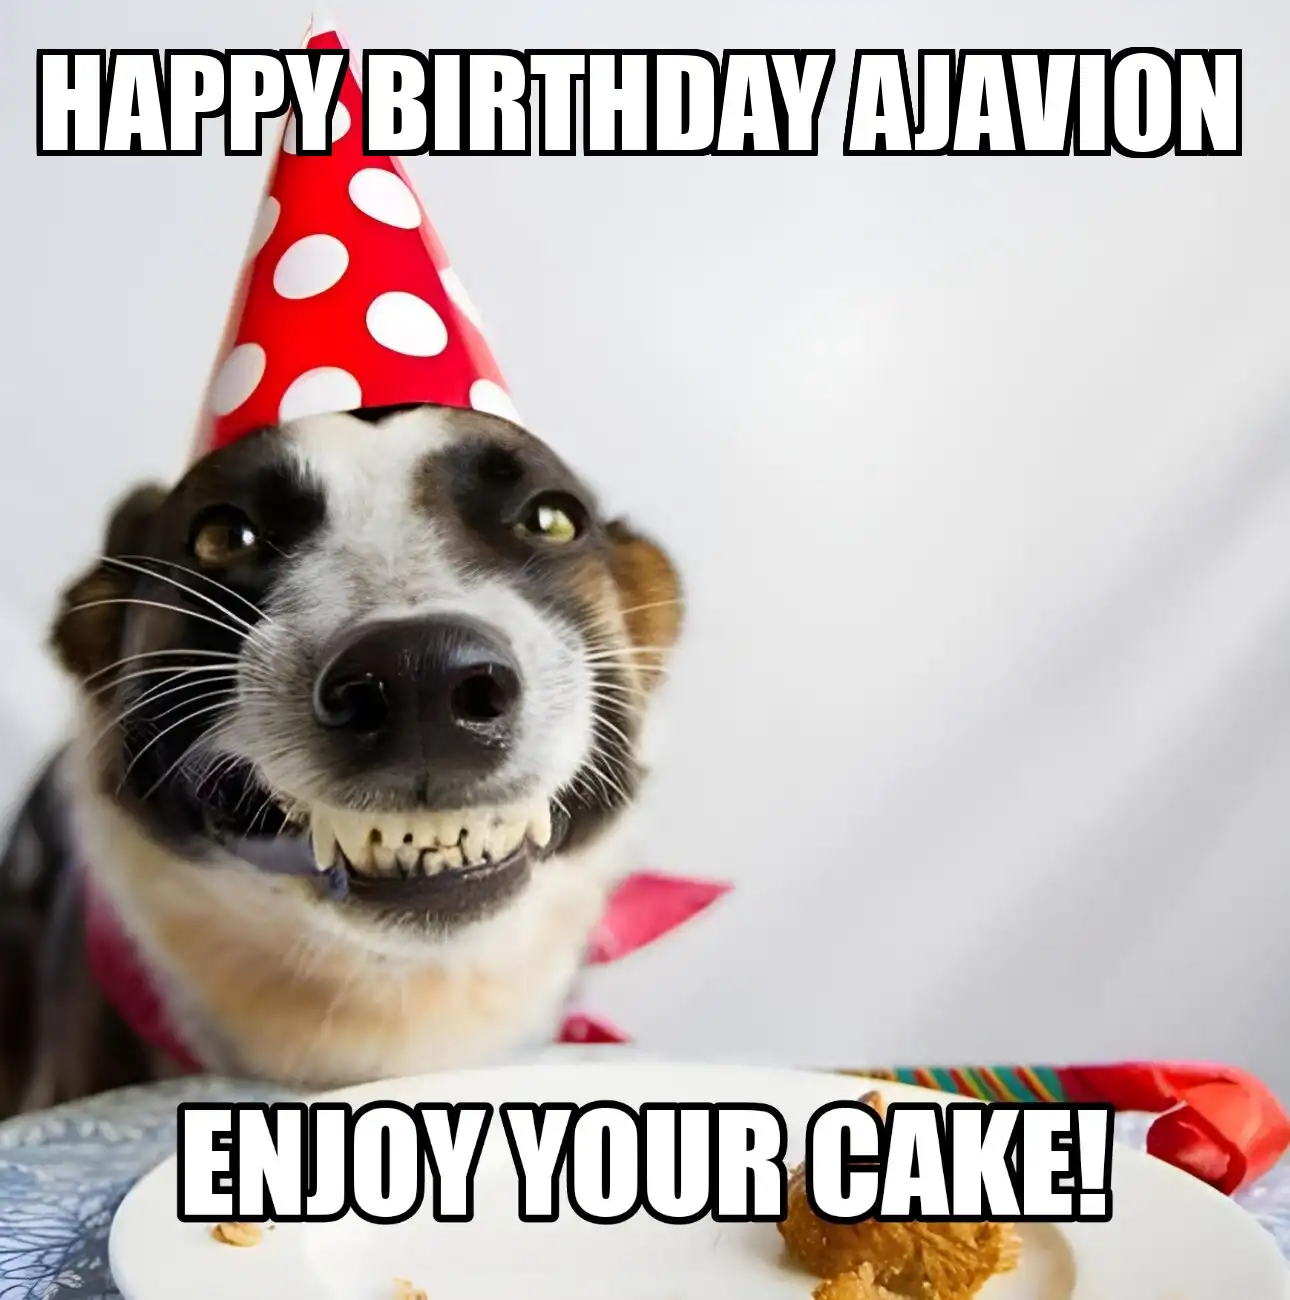 Happy Birthday Ajavion Enjoy Your Cake Dog Meme